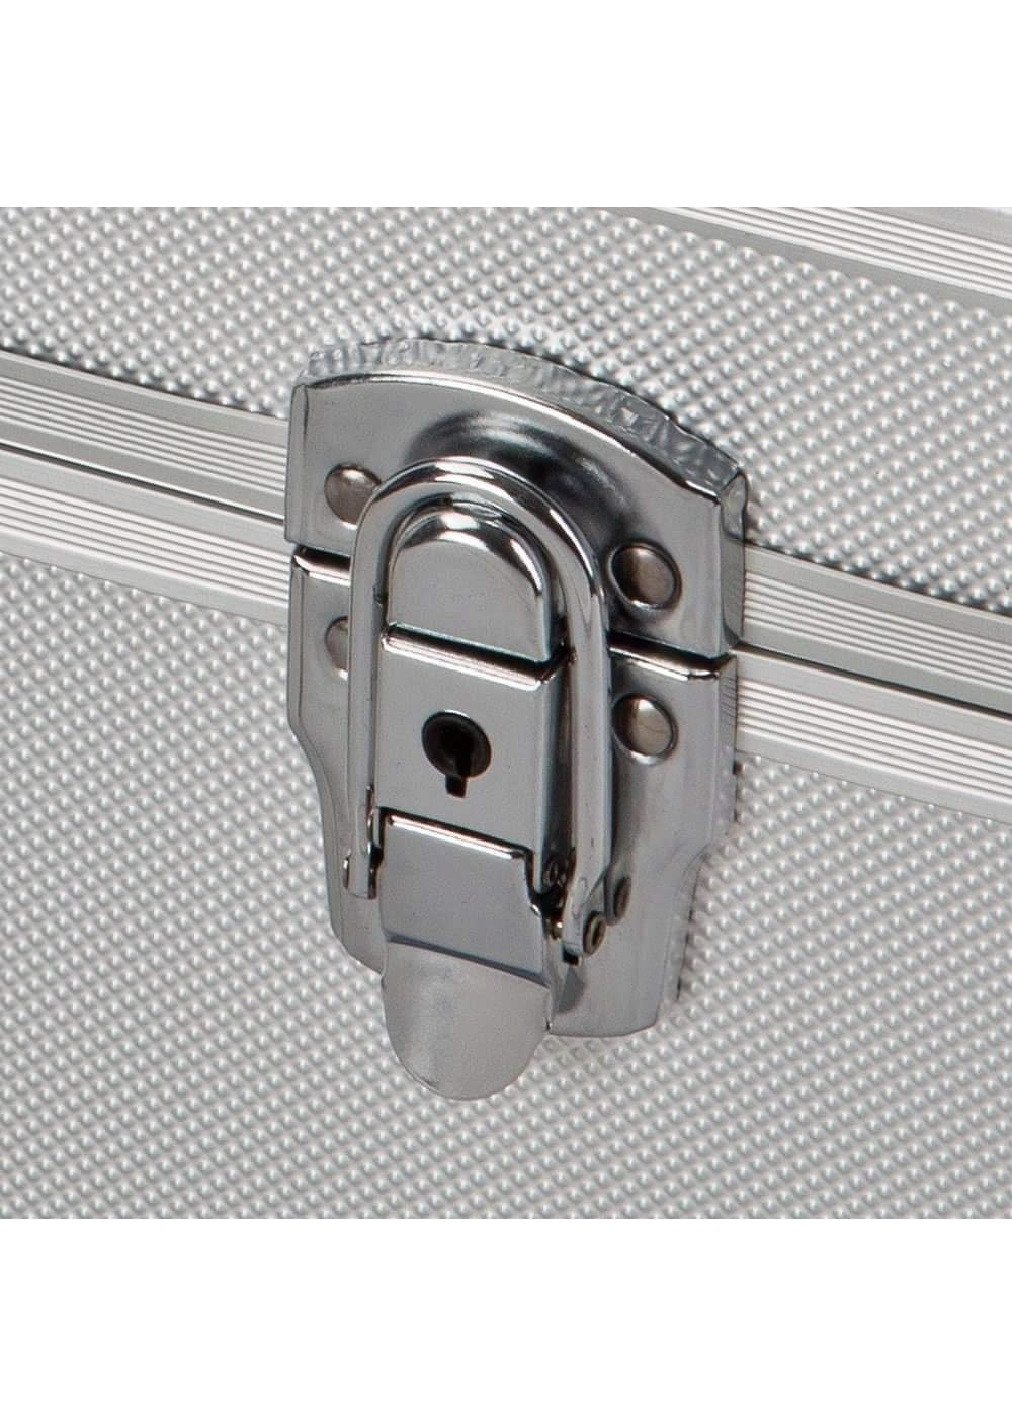 Кейс чемодан алюминиевый для безопасного хранения перевозки переноски транспортировки вещей 38х26х12 см (474883-Prob) Unbranded (260090827)